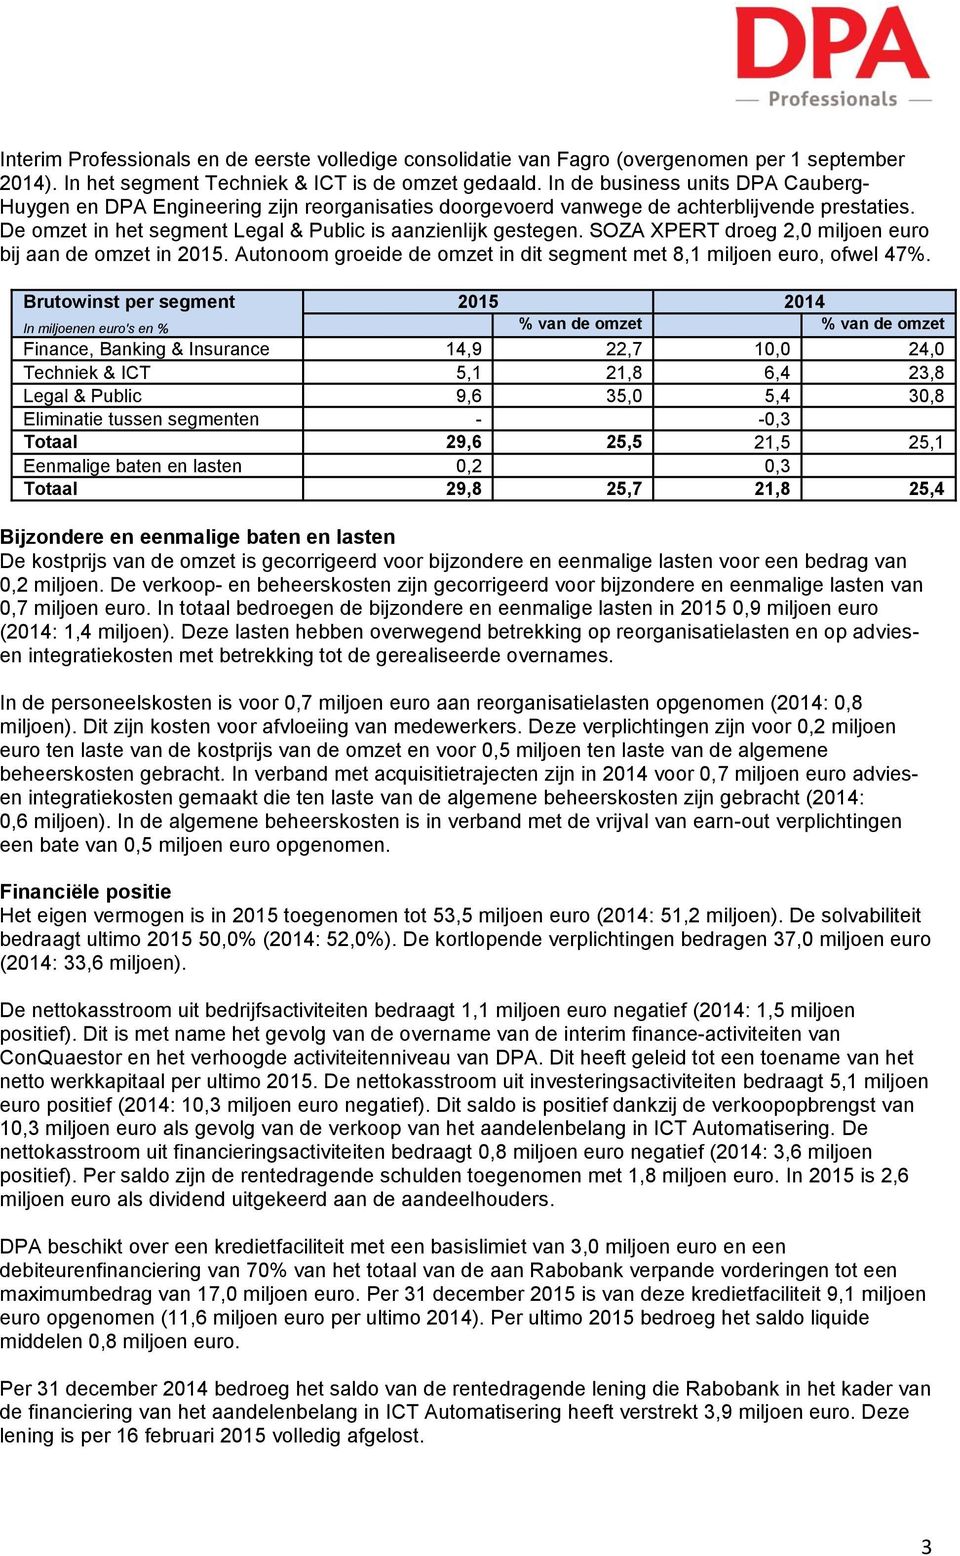 SOZA XPERT droeg 2,0 miljoen euro bij aan de omzet in 2015. Autonoom groeide de omzet in dit segment met 8,1 miljoen euro, ofwel 47%.